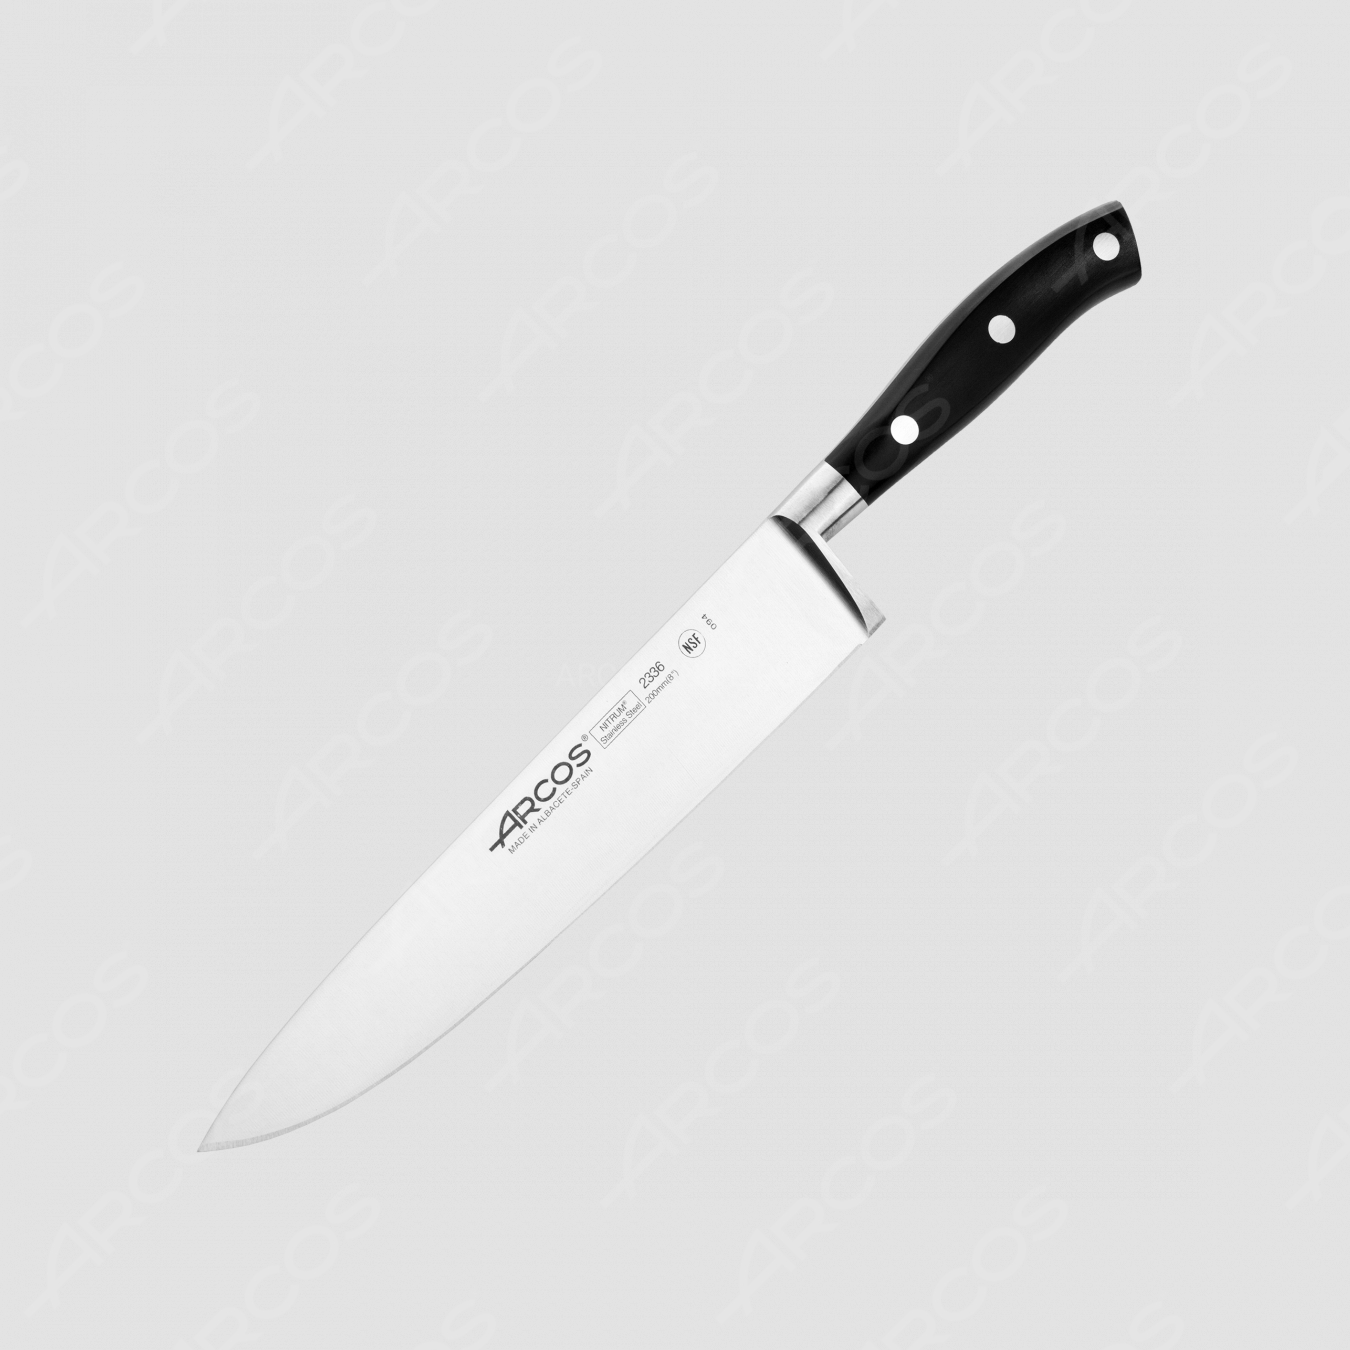 Профессиональный поварской кухонный нож 20 см, серия Riviera, ARCOS, Испания